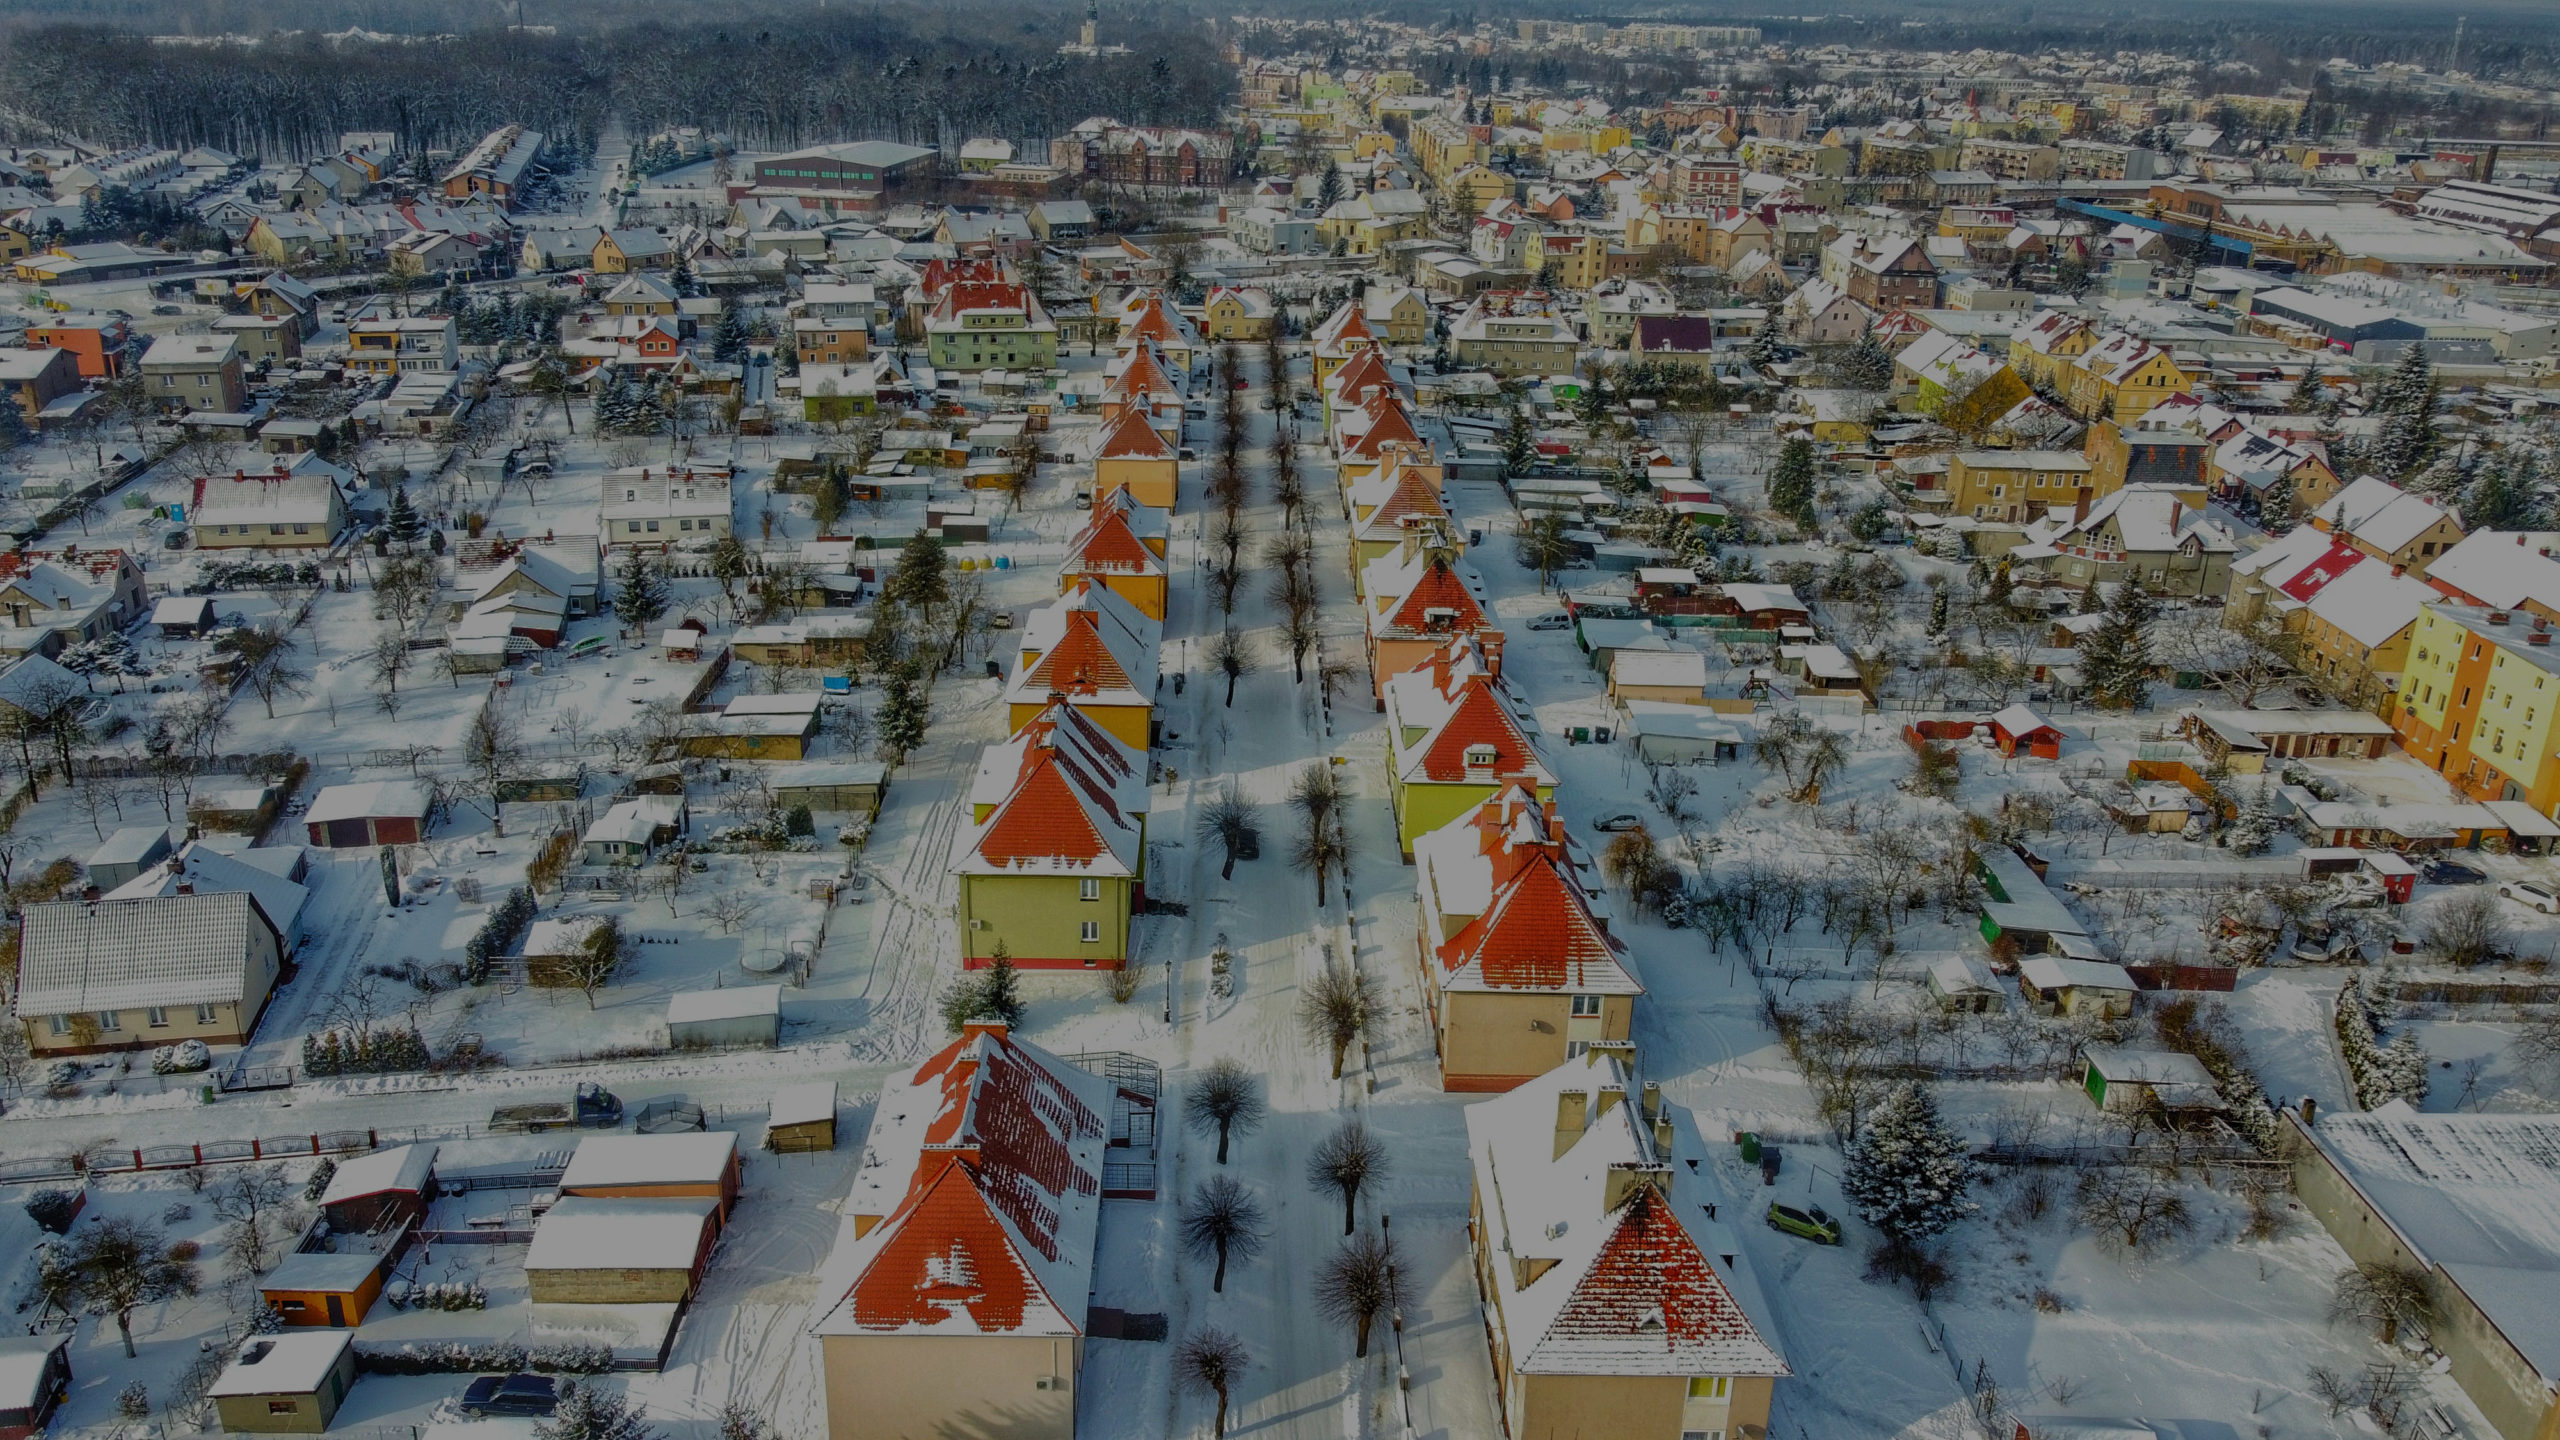 Qisok z góry na osiedle domów jednorodzinnych w zimowej scenerii